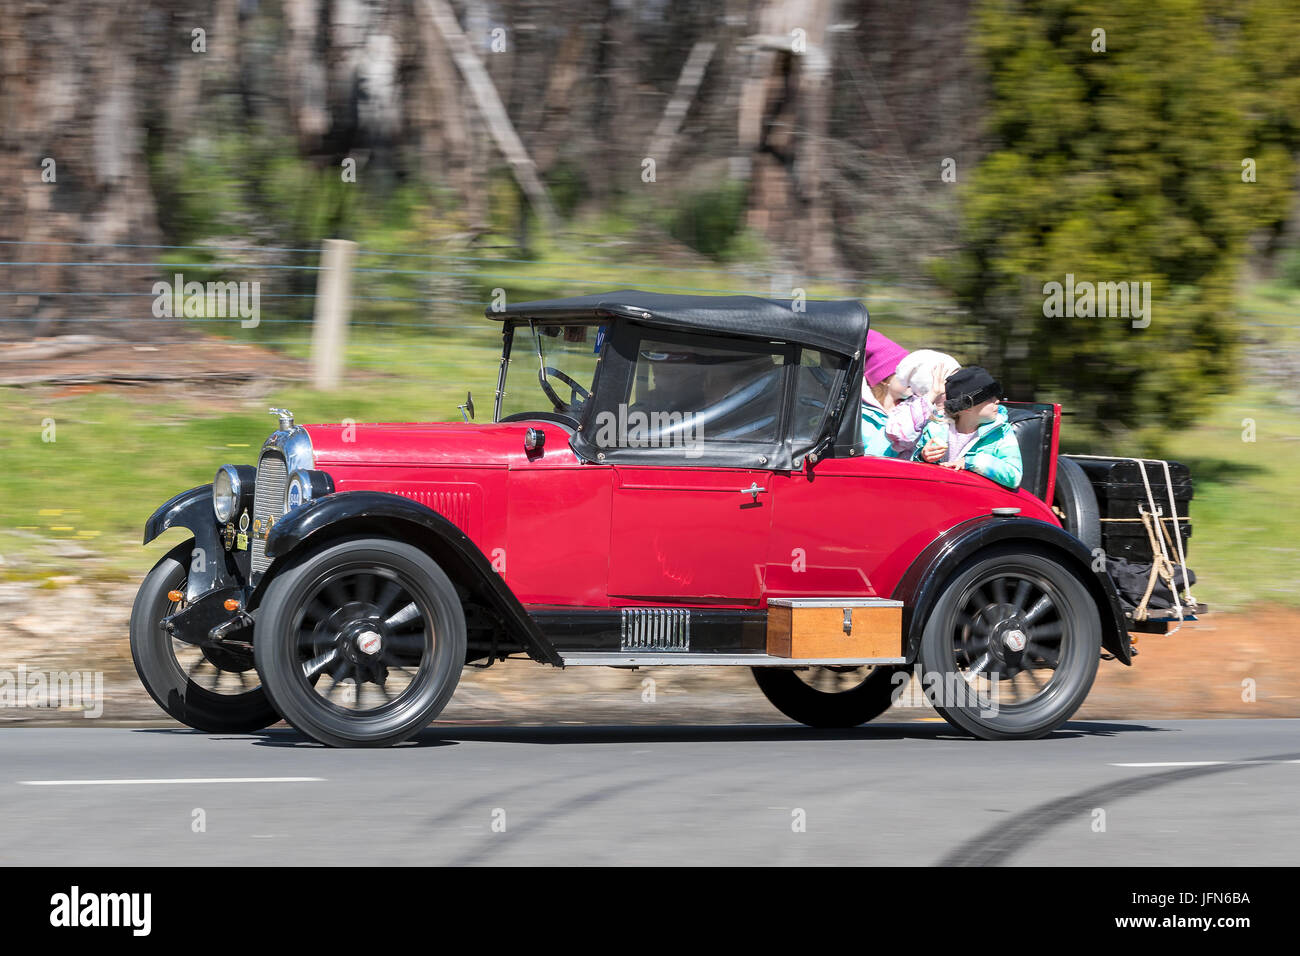 Jahrgang 1927 Willys Whippet 96 Roadster fahren auf der Landstraße in der Nähe der Stadt Birdwood, South Australia. Stockfoto